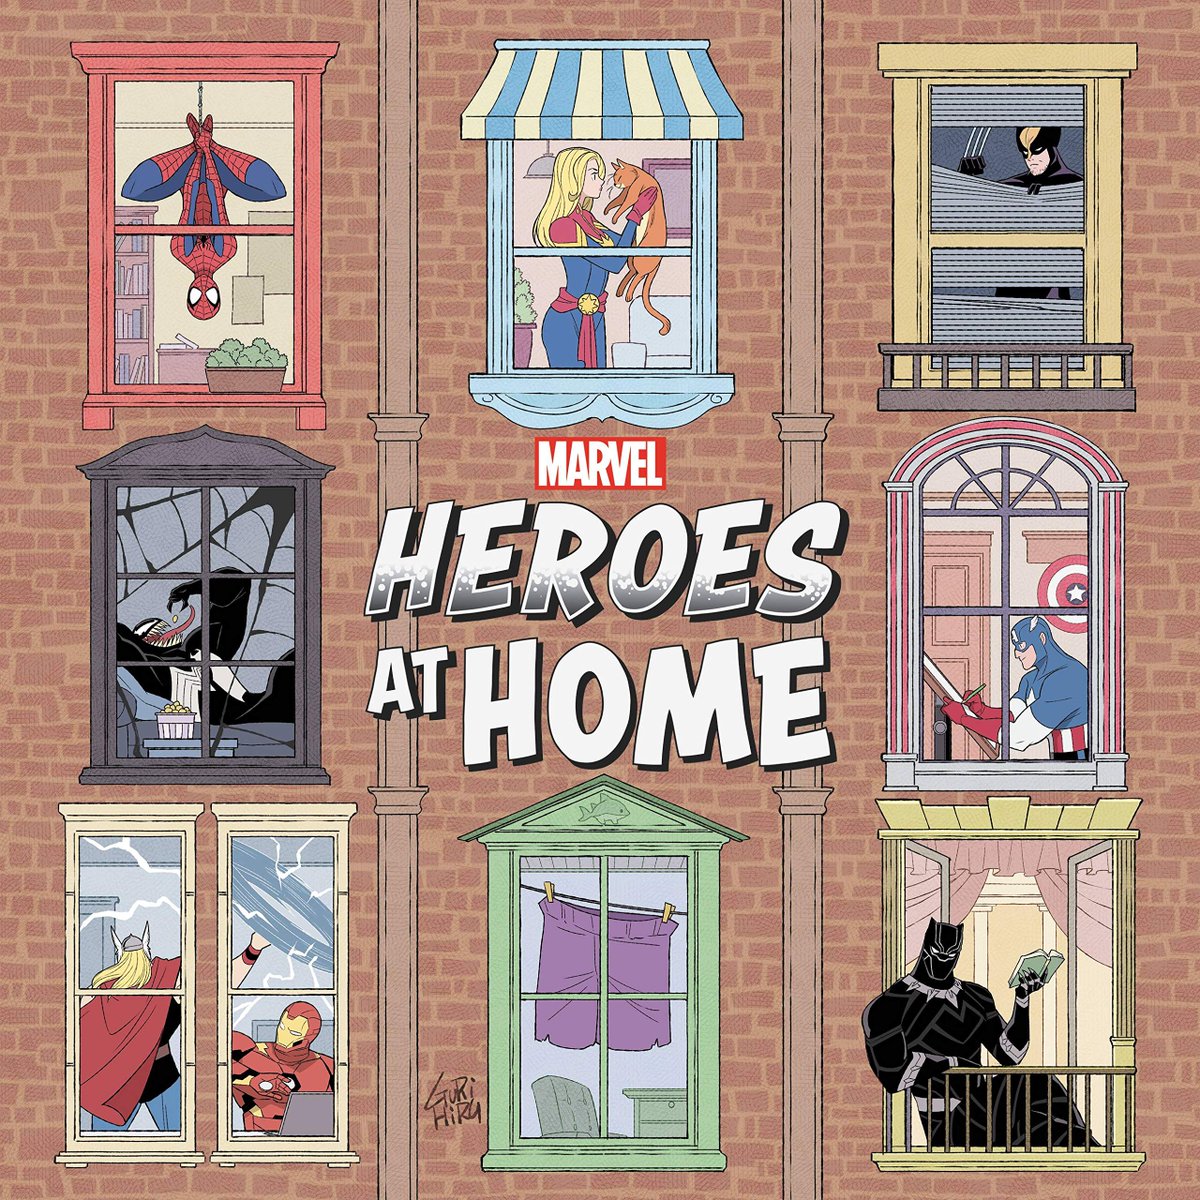 この話は「Heroes at Home」に収録されています。ライターはZeb Wellsさん。ヴェノムの他にも色々なマーベルヒーローたちのステイホームの状況を描いていて、キンドルでも読むことができます(セリフは殆どありません)

https://t.co/n2dhZcGngl 